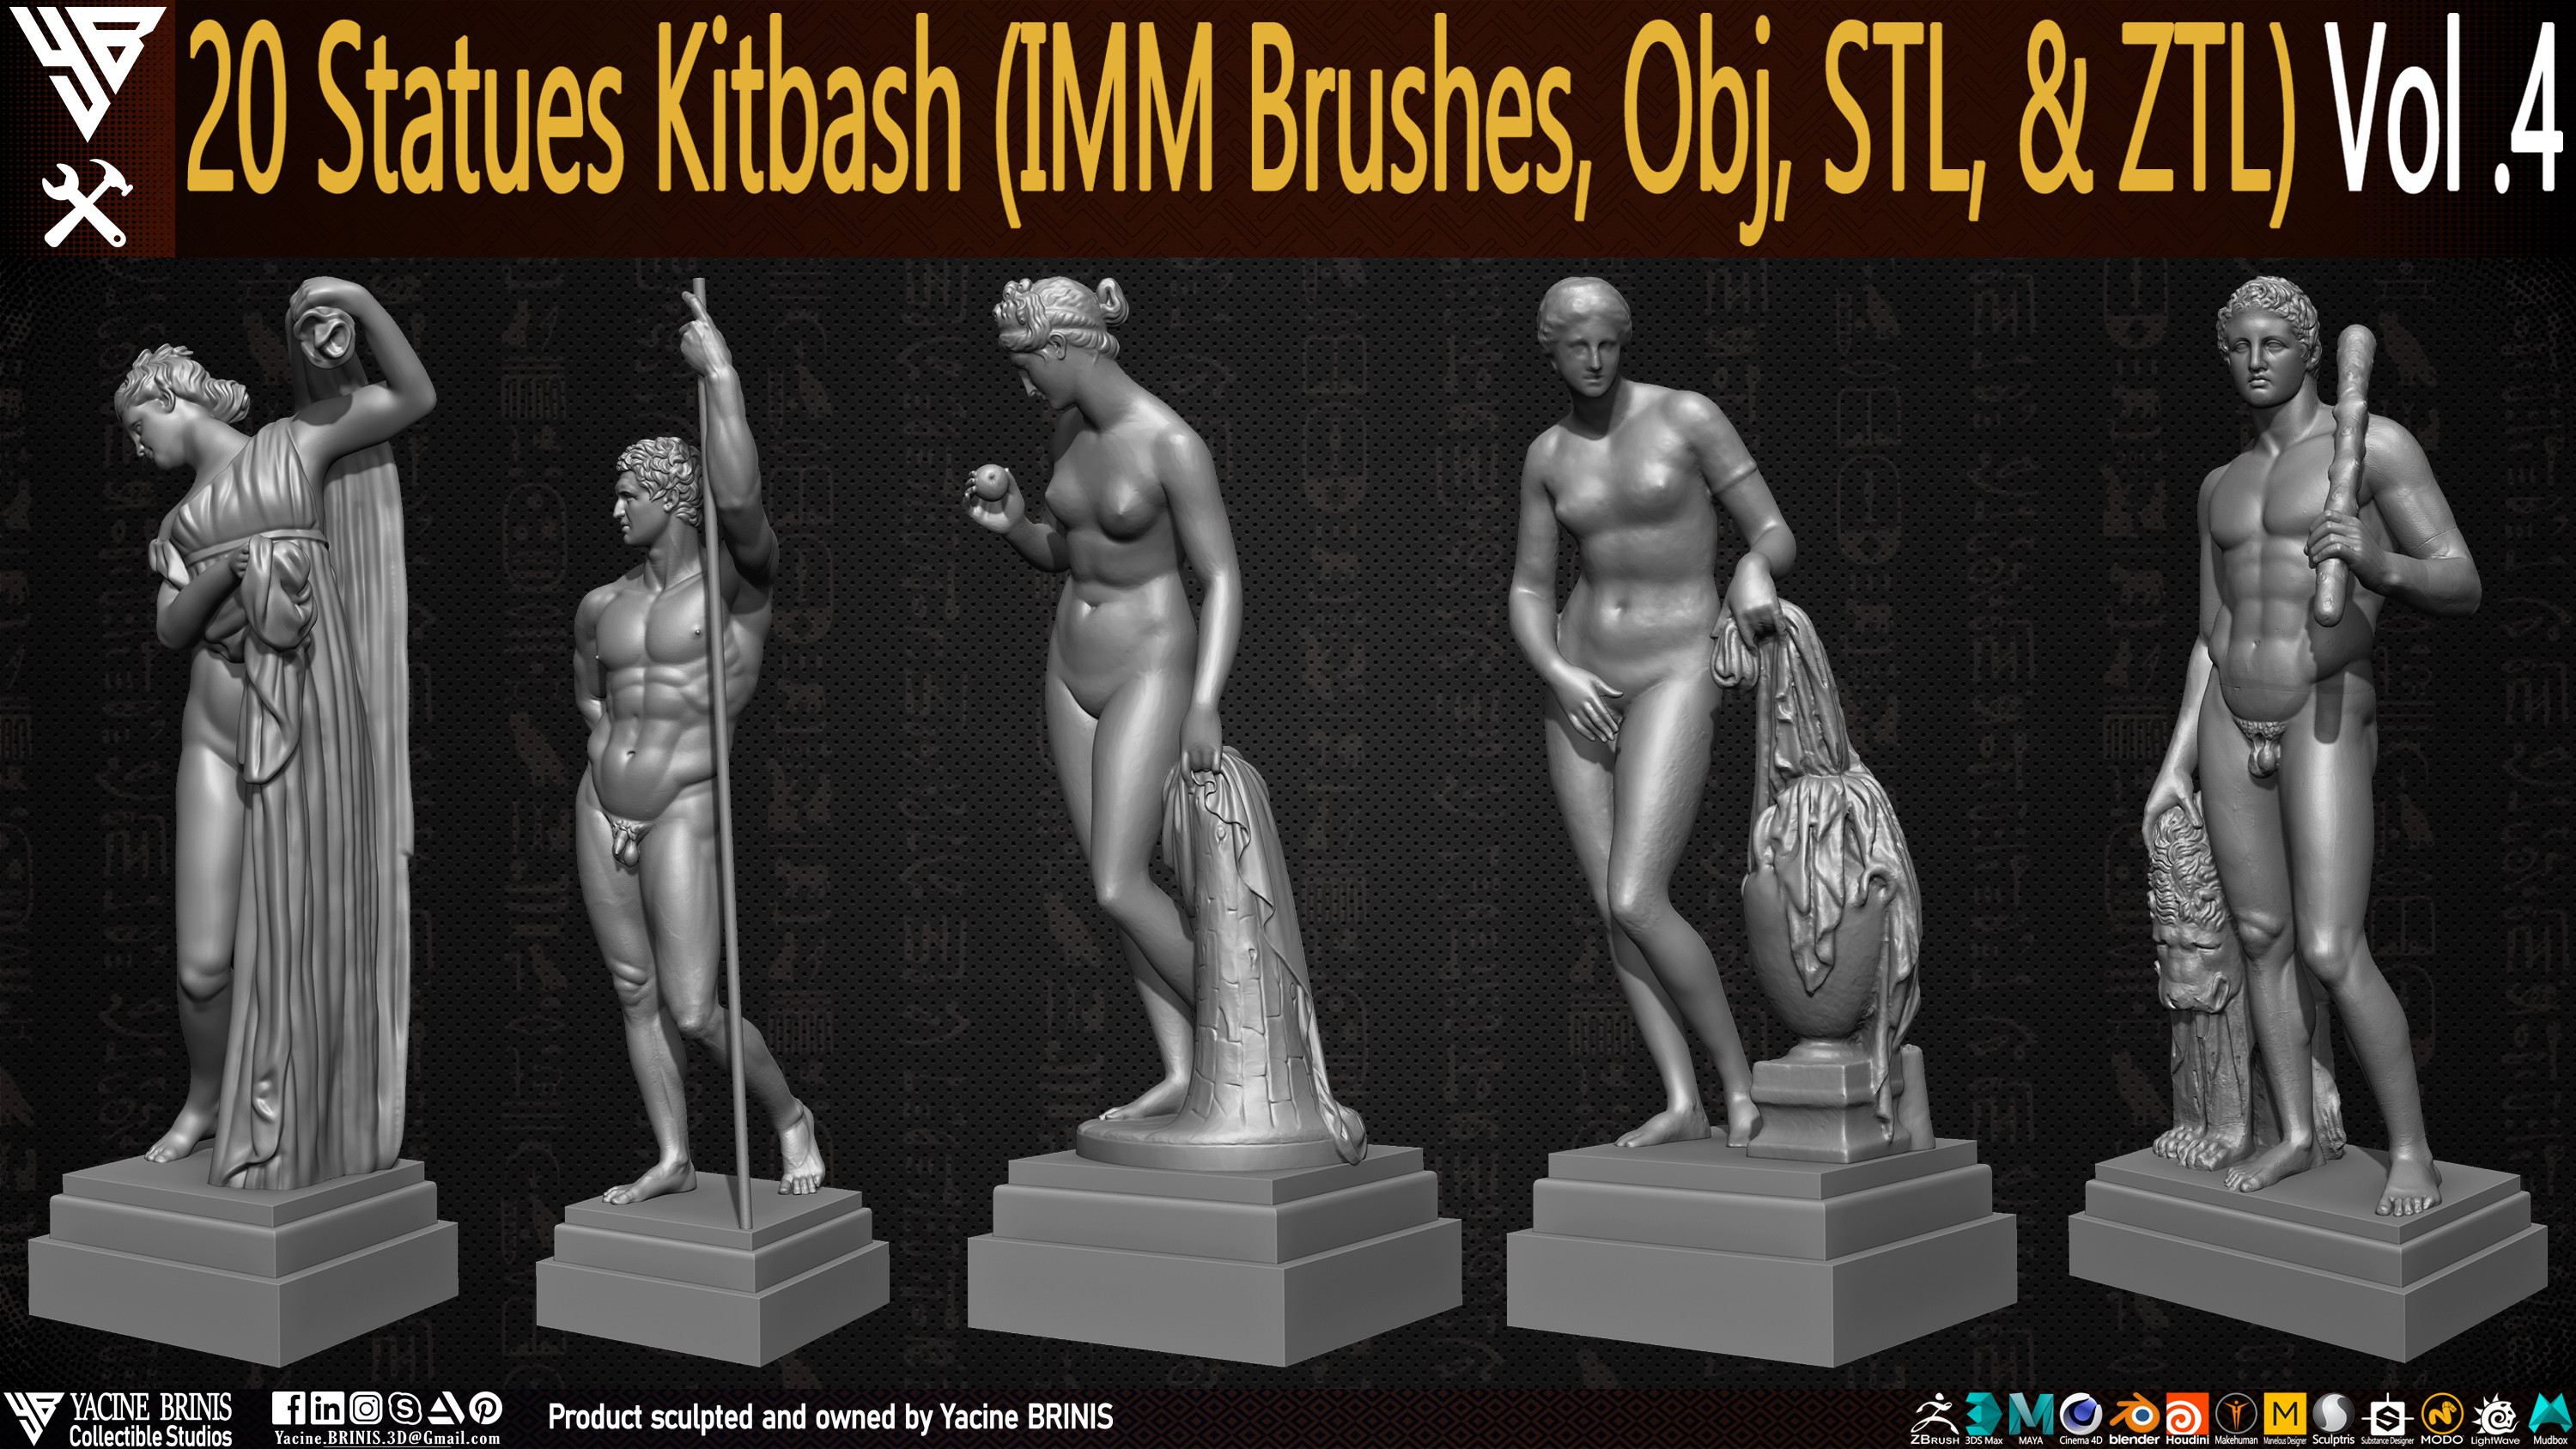 Statues Kitbash by yacine brinis Set 21